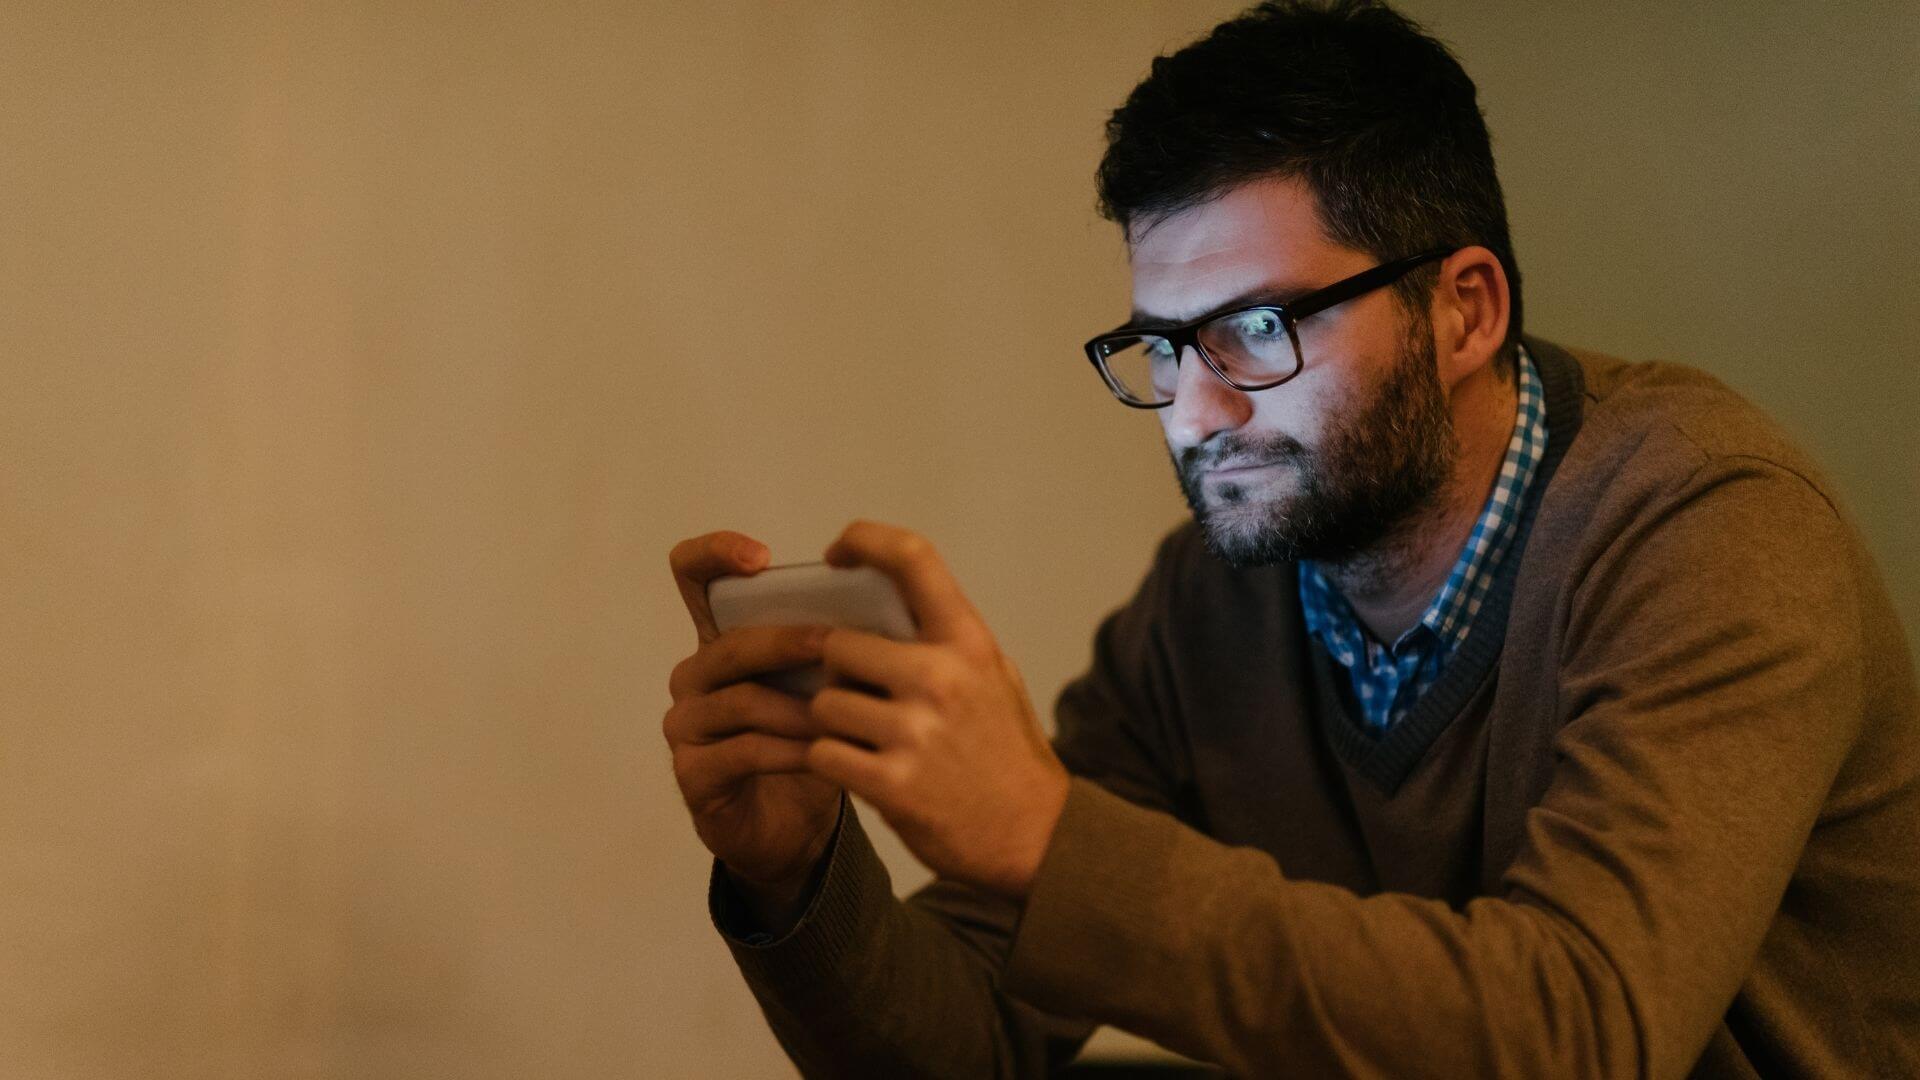 Mann spielt mit Handy am Abend - Blaulicht